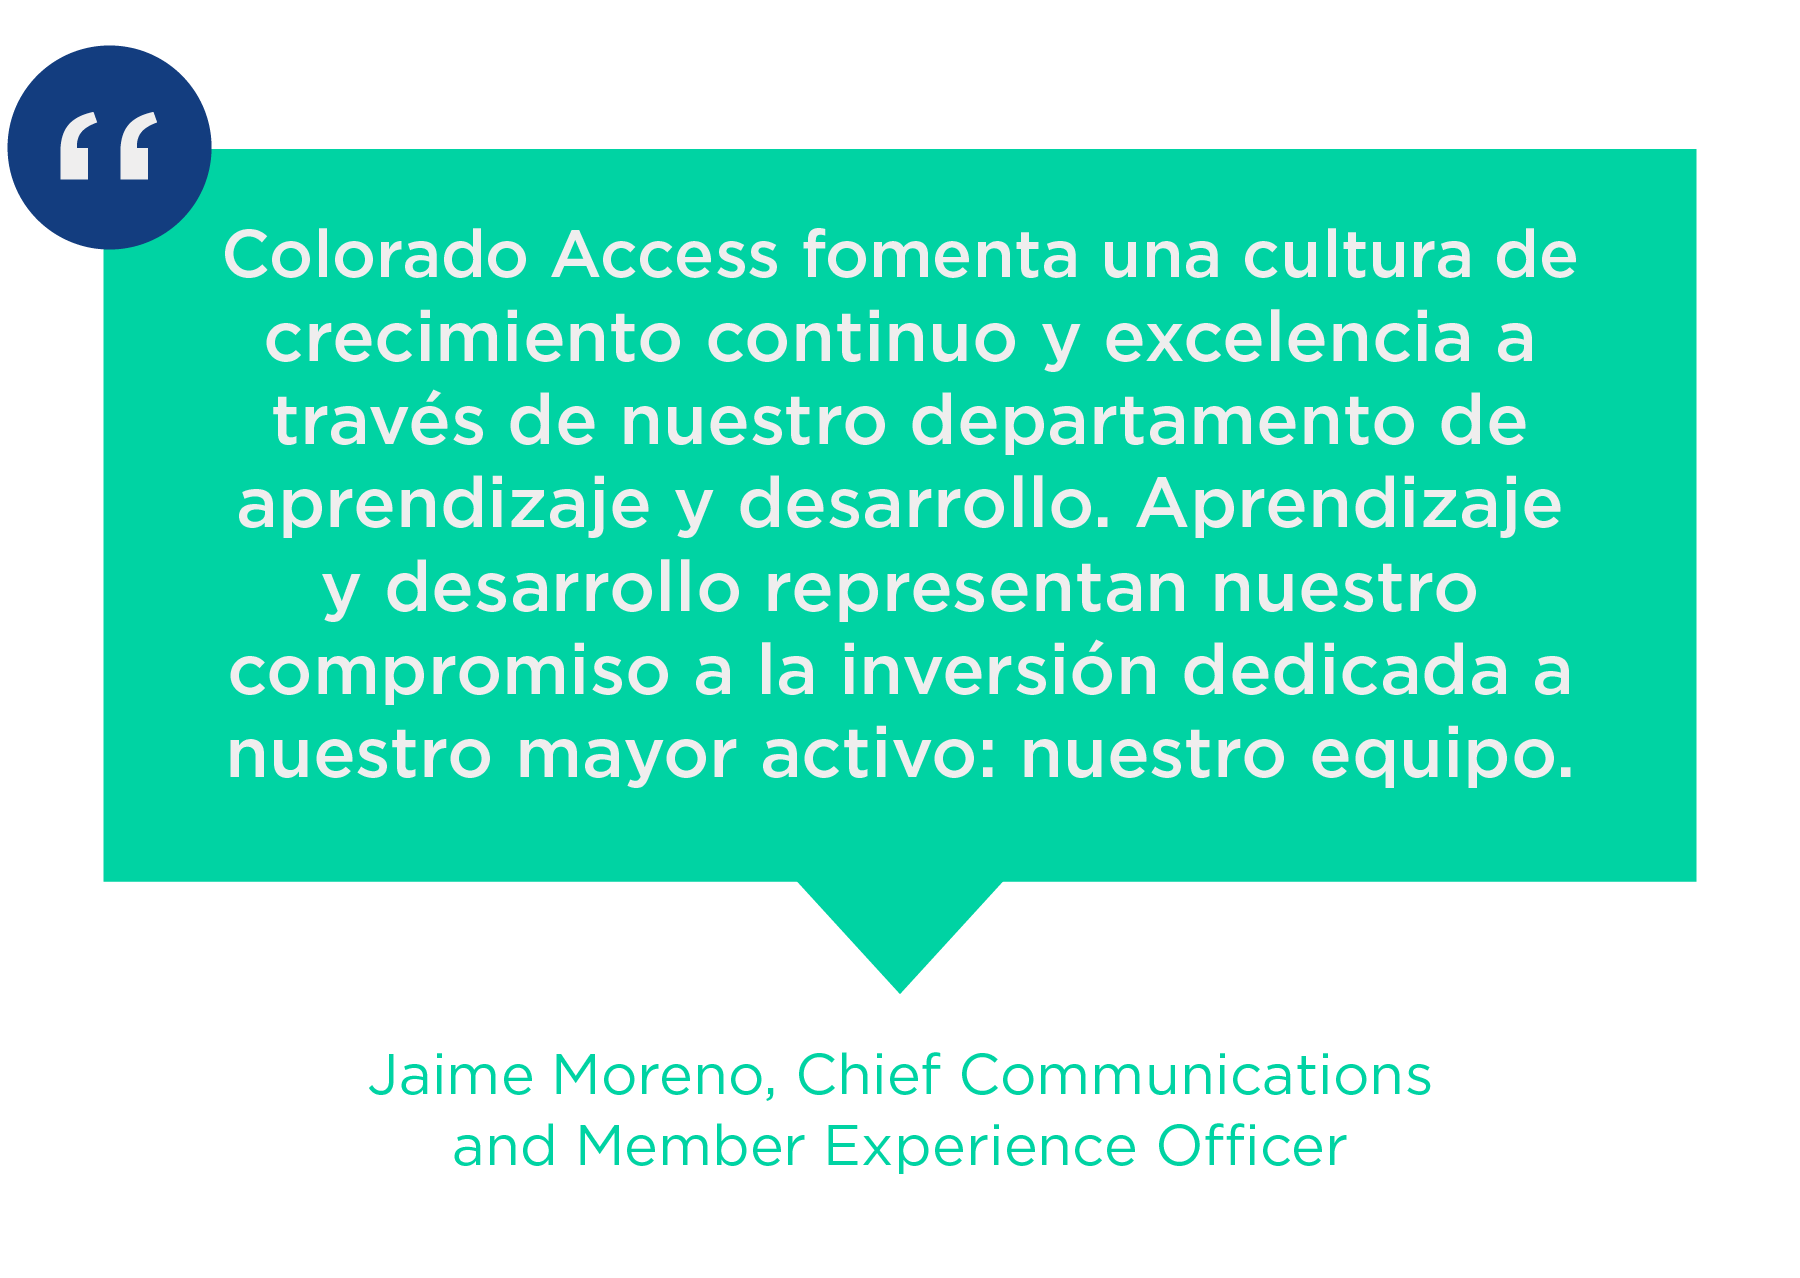 Colorado Access fomenta unha cultura de crecemento continuo e excelencia a través do noso departamento de aprendizaxe e desenvolvemento. Aprendizaxe e desenvolvemento representa o noso compromiso á inversión dedicada ao noso maior activo: o noso equipo